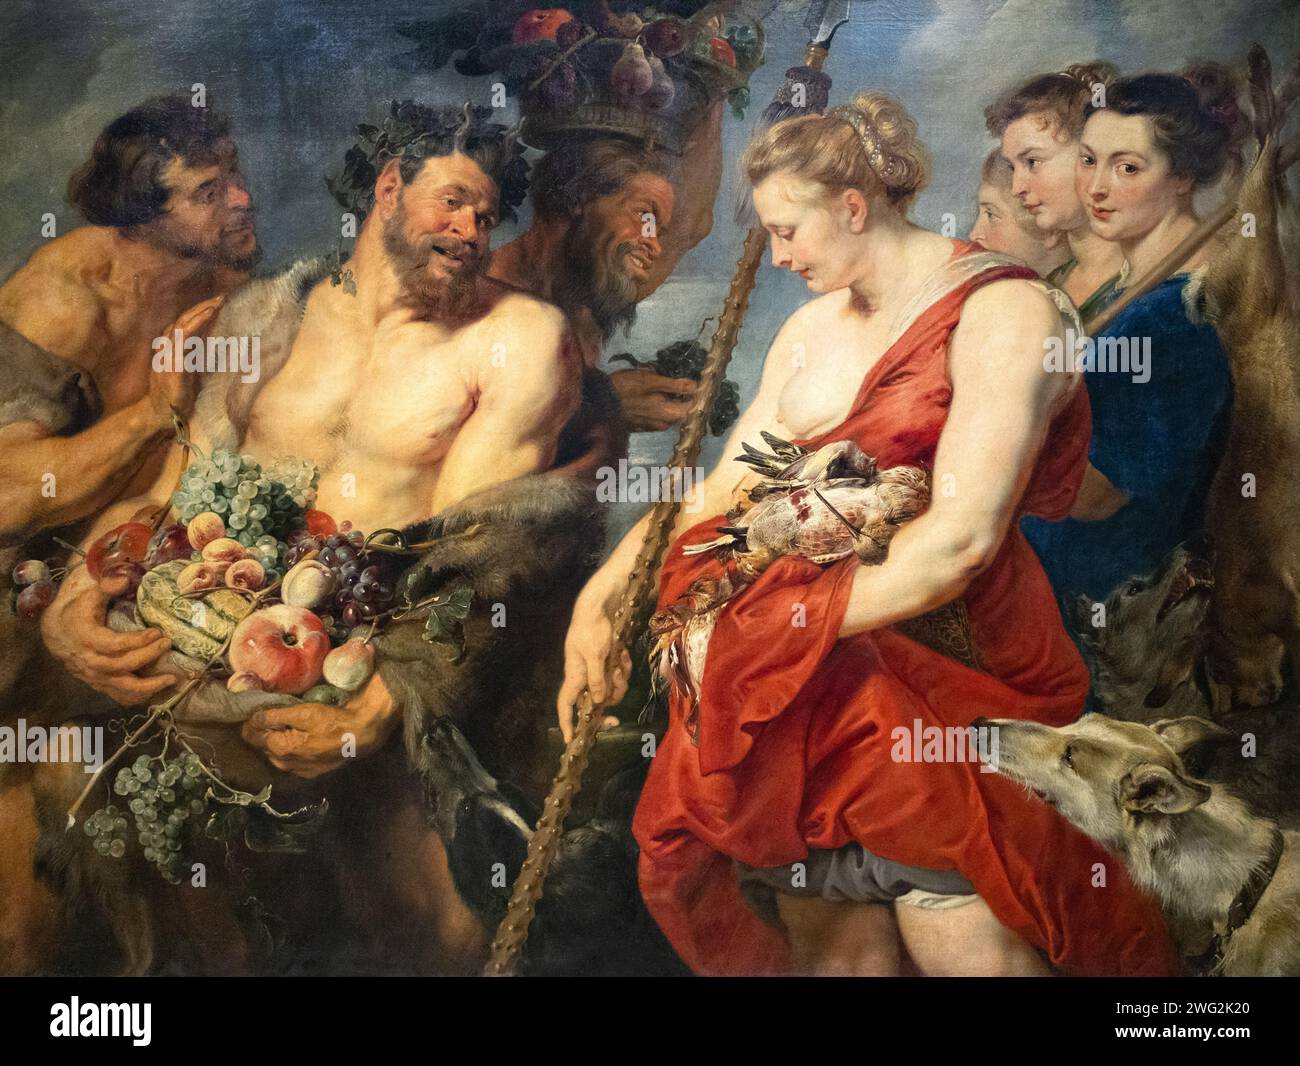 Pierre Paul Rubens et Frans Snyders peinture, 'Diana revenant de la chasse', c.1623, huile sur toile ; peinture d'histoire d'une scène mythologique. Banque D'Images